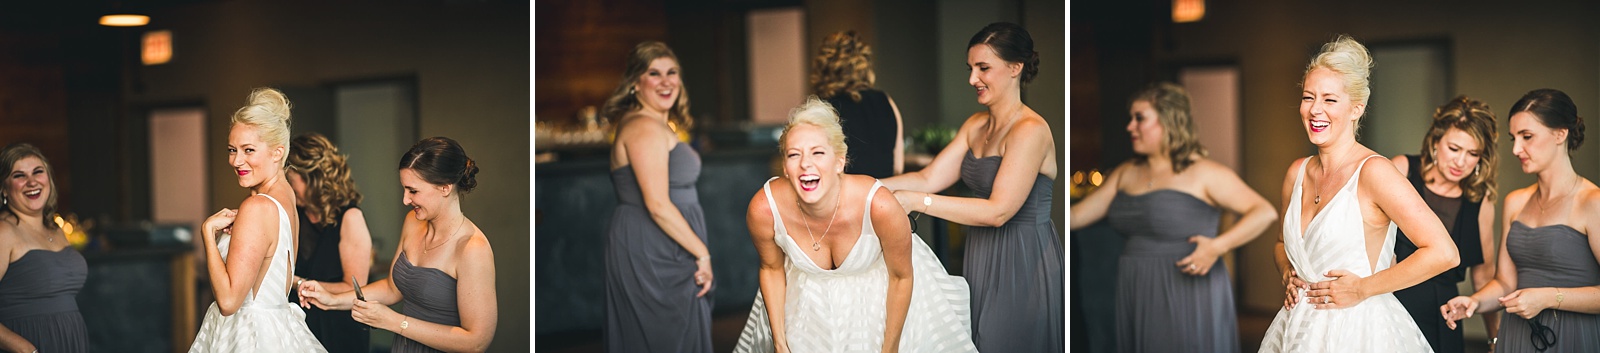 44 happy bride - Morgan's on Fulton Wedding Photos // Jessica + Bill